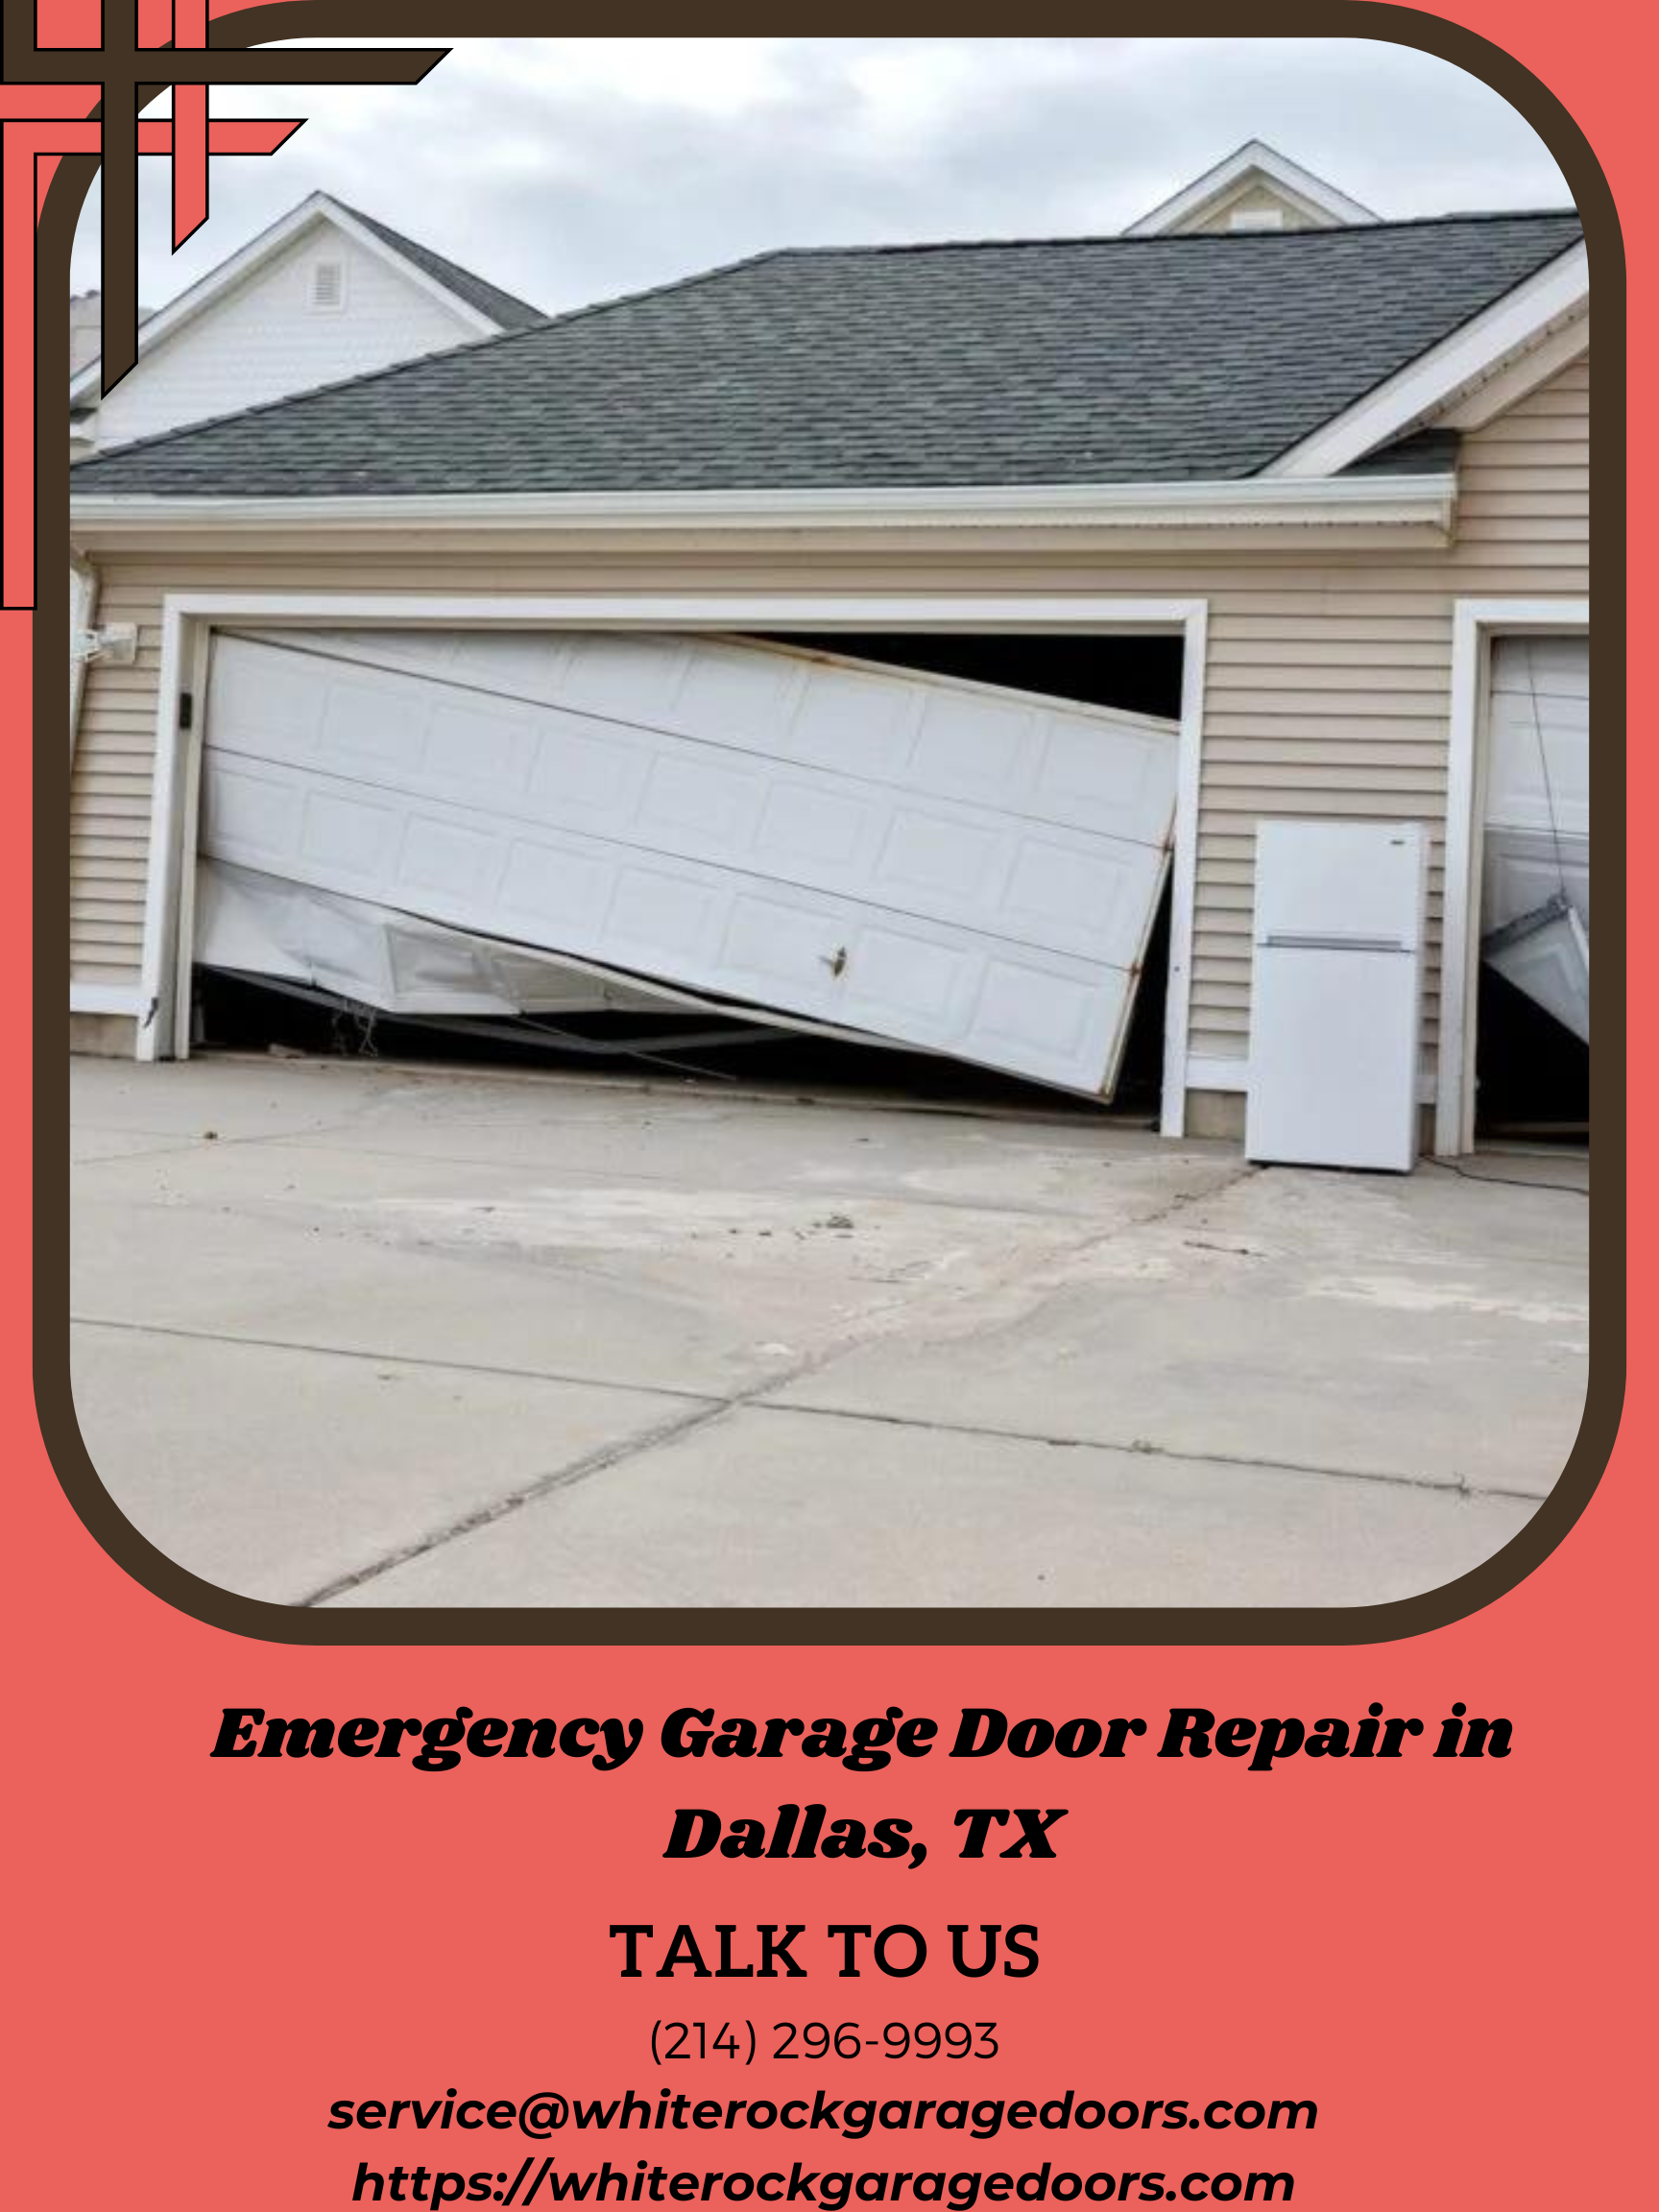 Emergency Garage Door Repair.png | Pearltrees